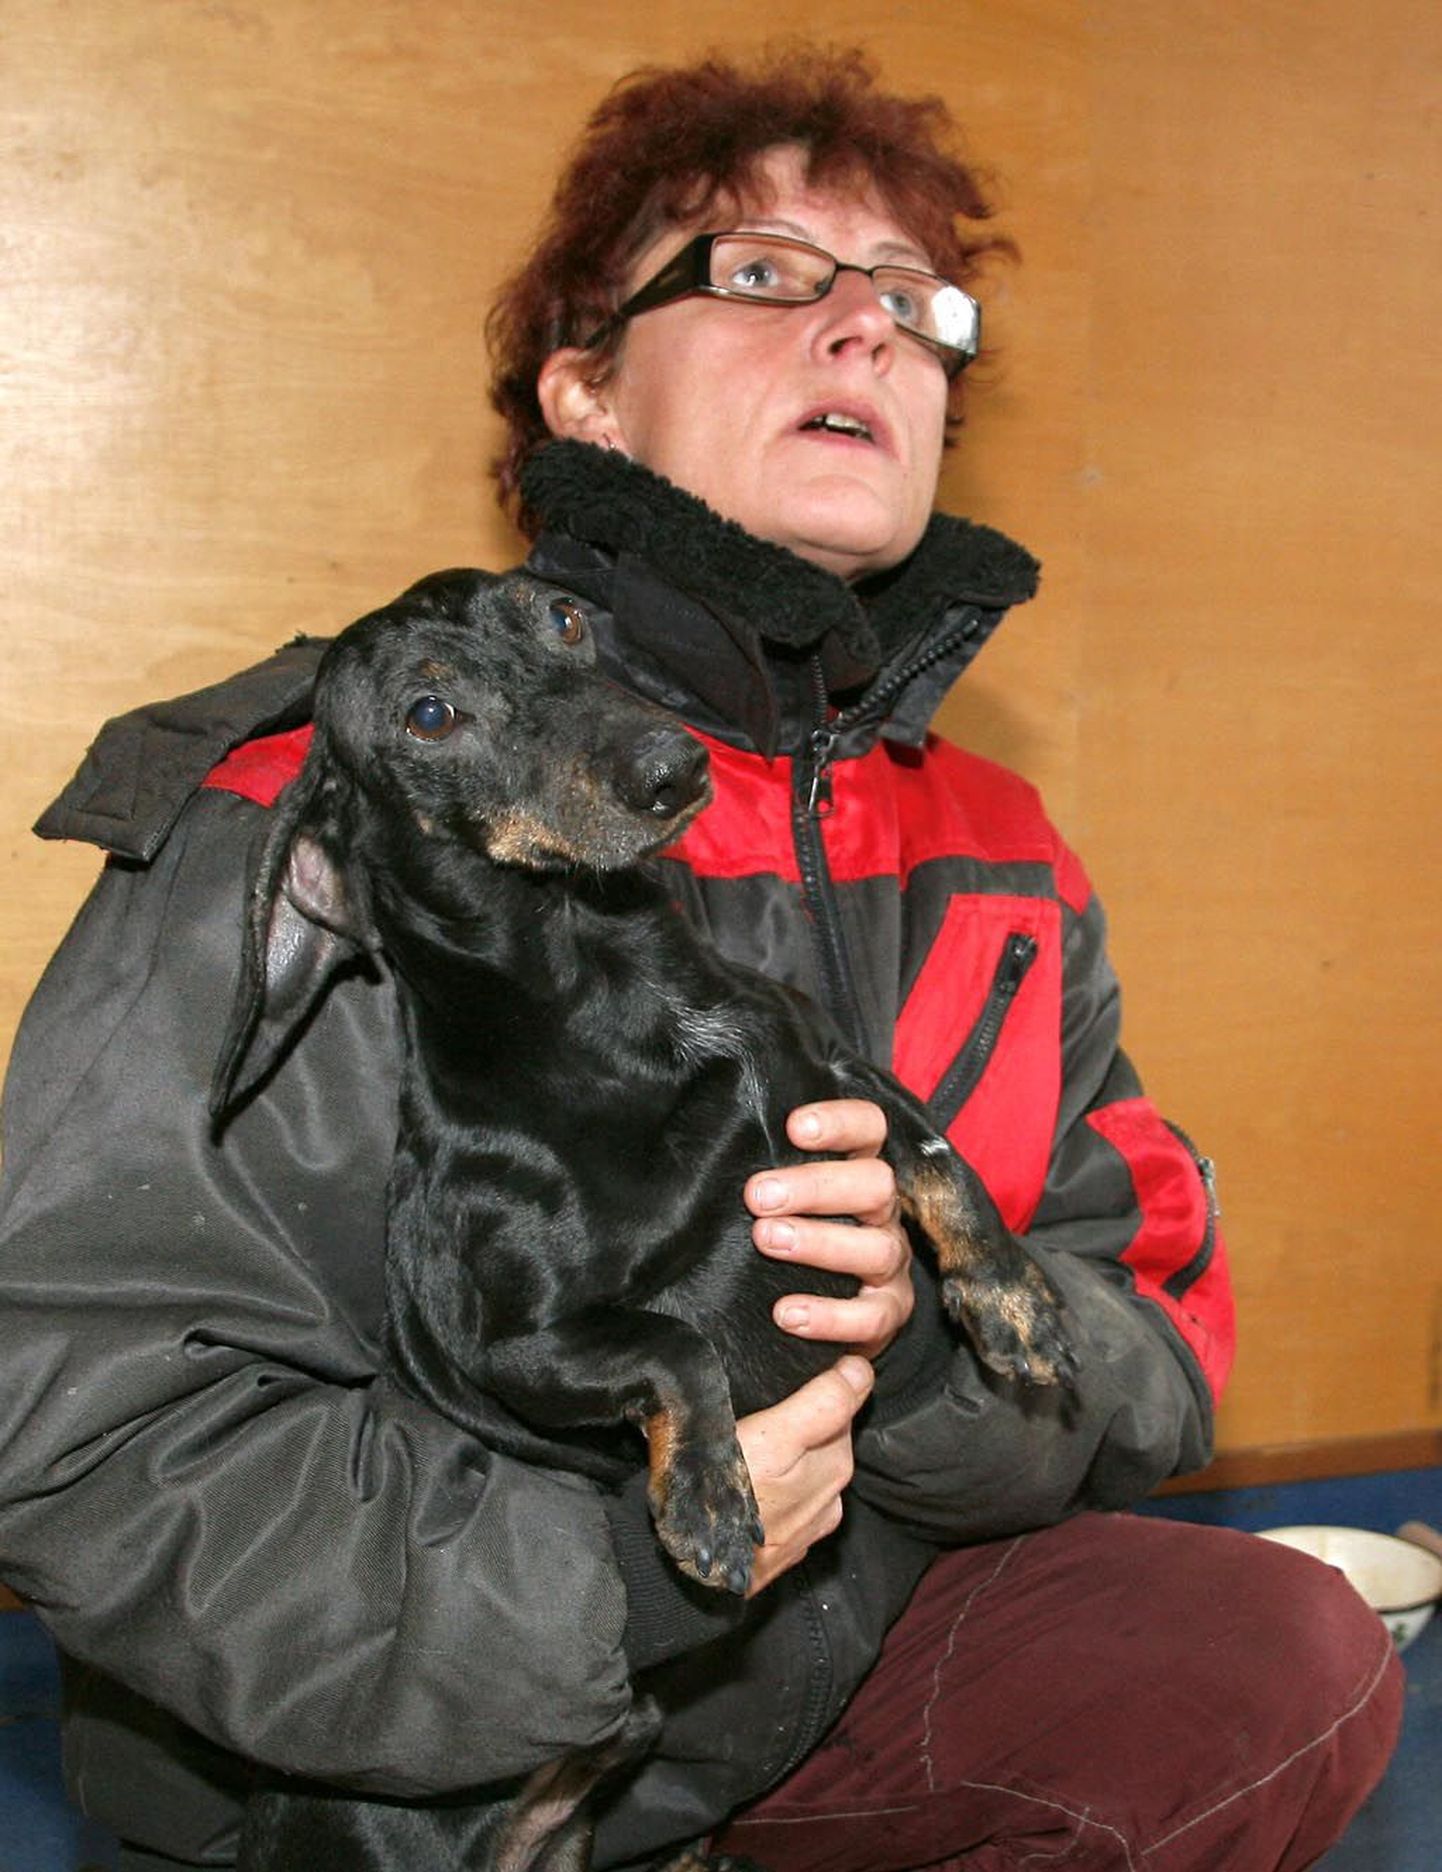 Taks-Taks püsib varjupaiga töötaja Lilian Herne süles vaid hetke, muidu ei seisa koerake pudeliski paigal.